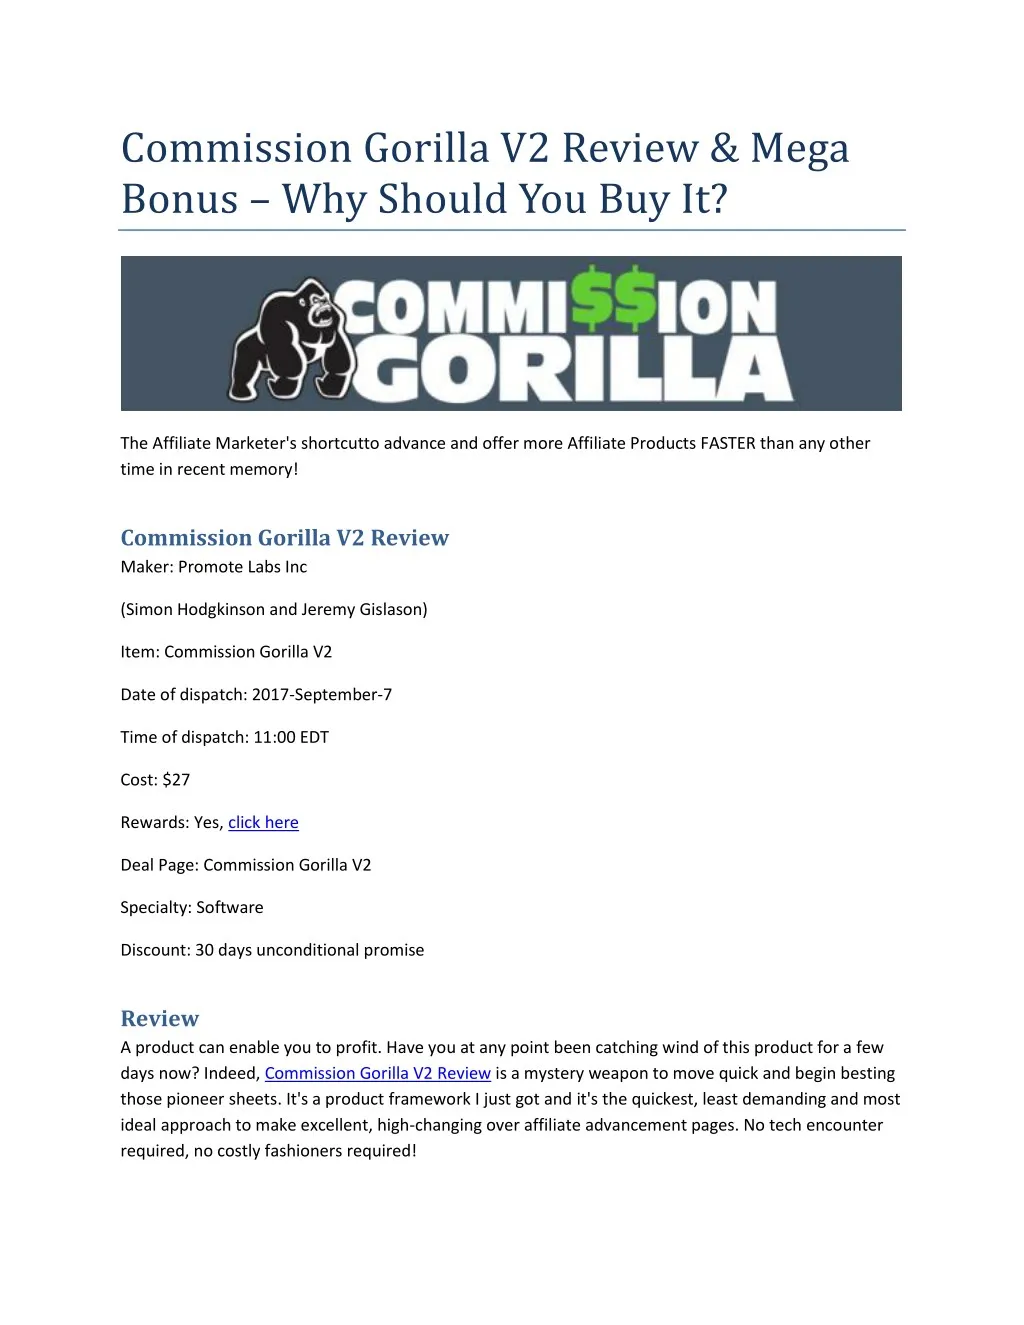 commission gorilla v2 review mega bonus